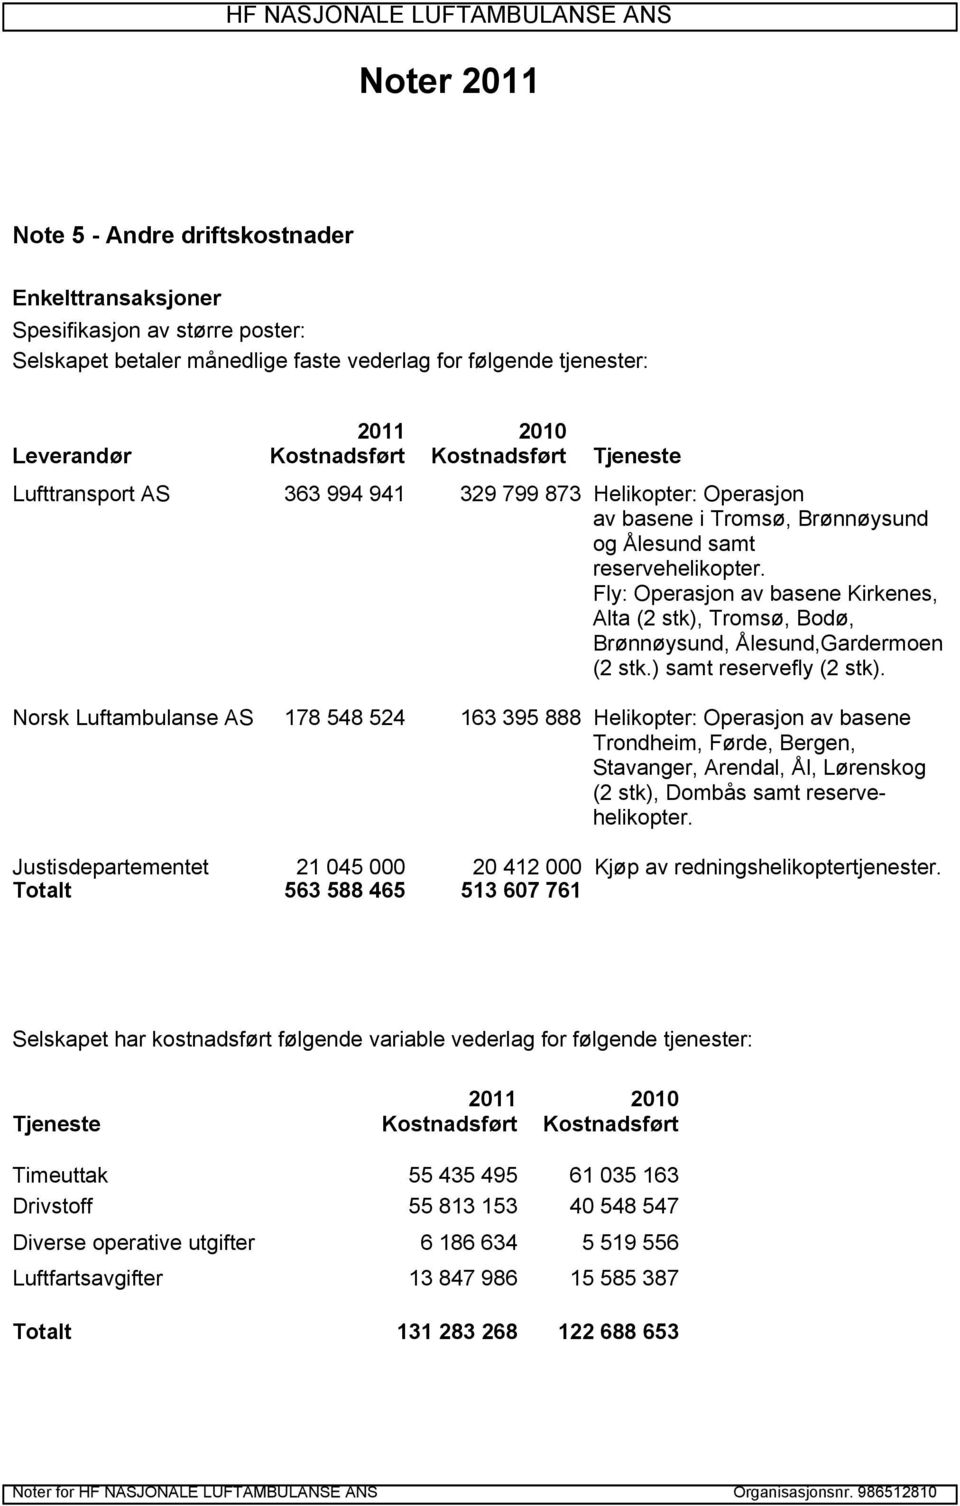 Fly: Operasjon av basene Kirkenes, Alta (2 stk), Tromsø, Bodø, Brønnøysund, Ålesund,Gardermoen (2 stk.) samt reservefly (2 stk).